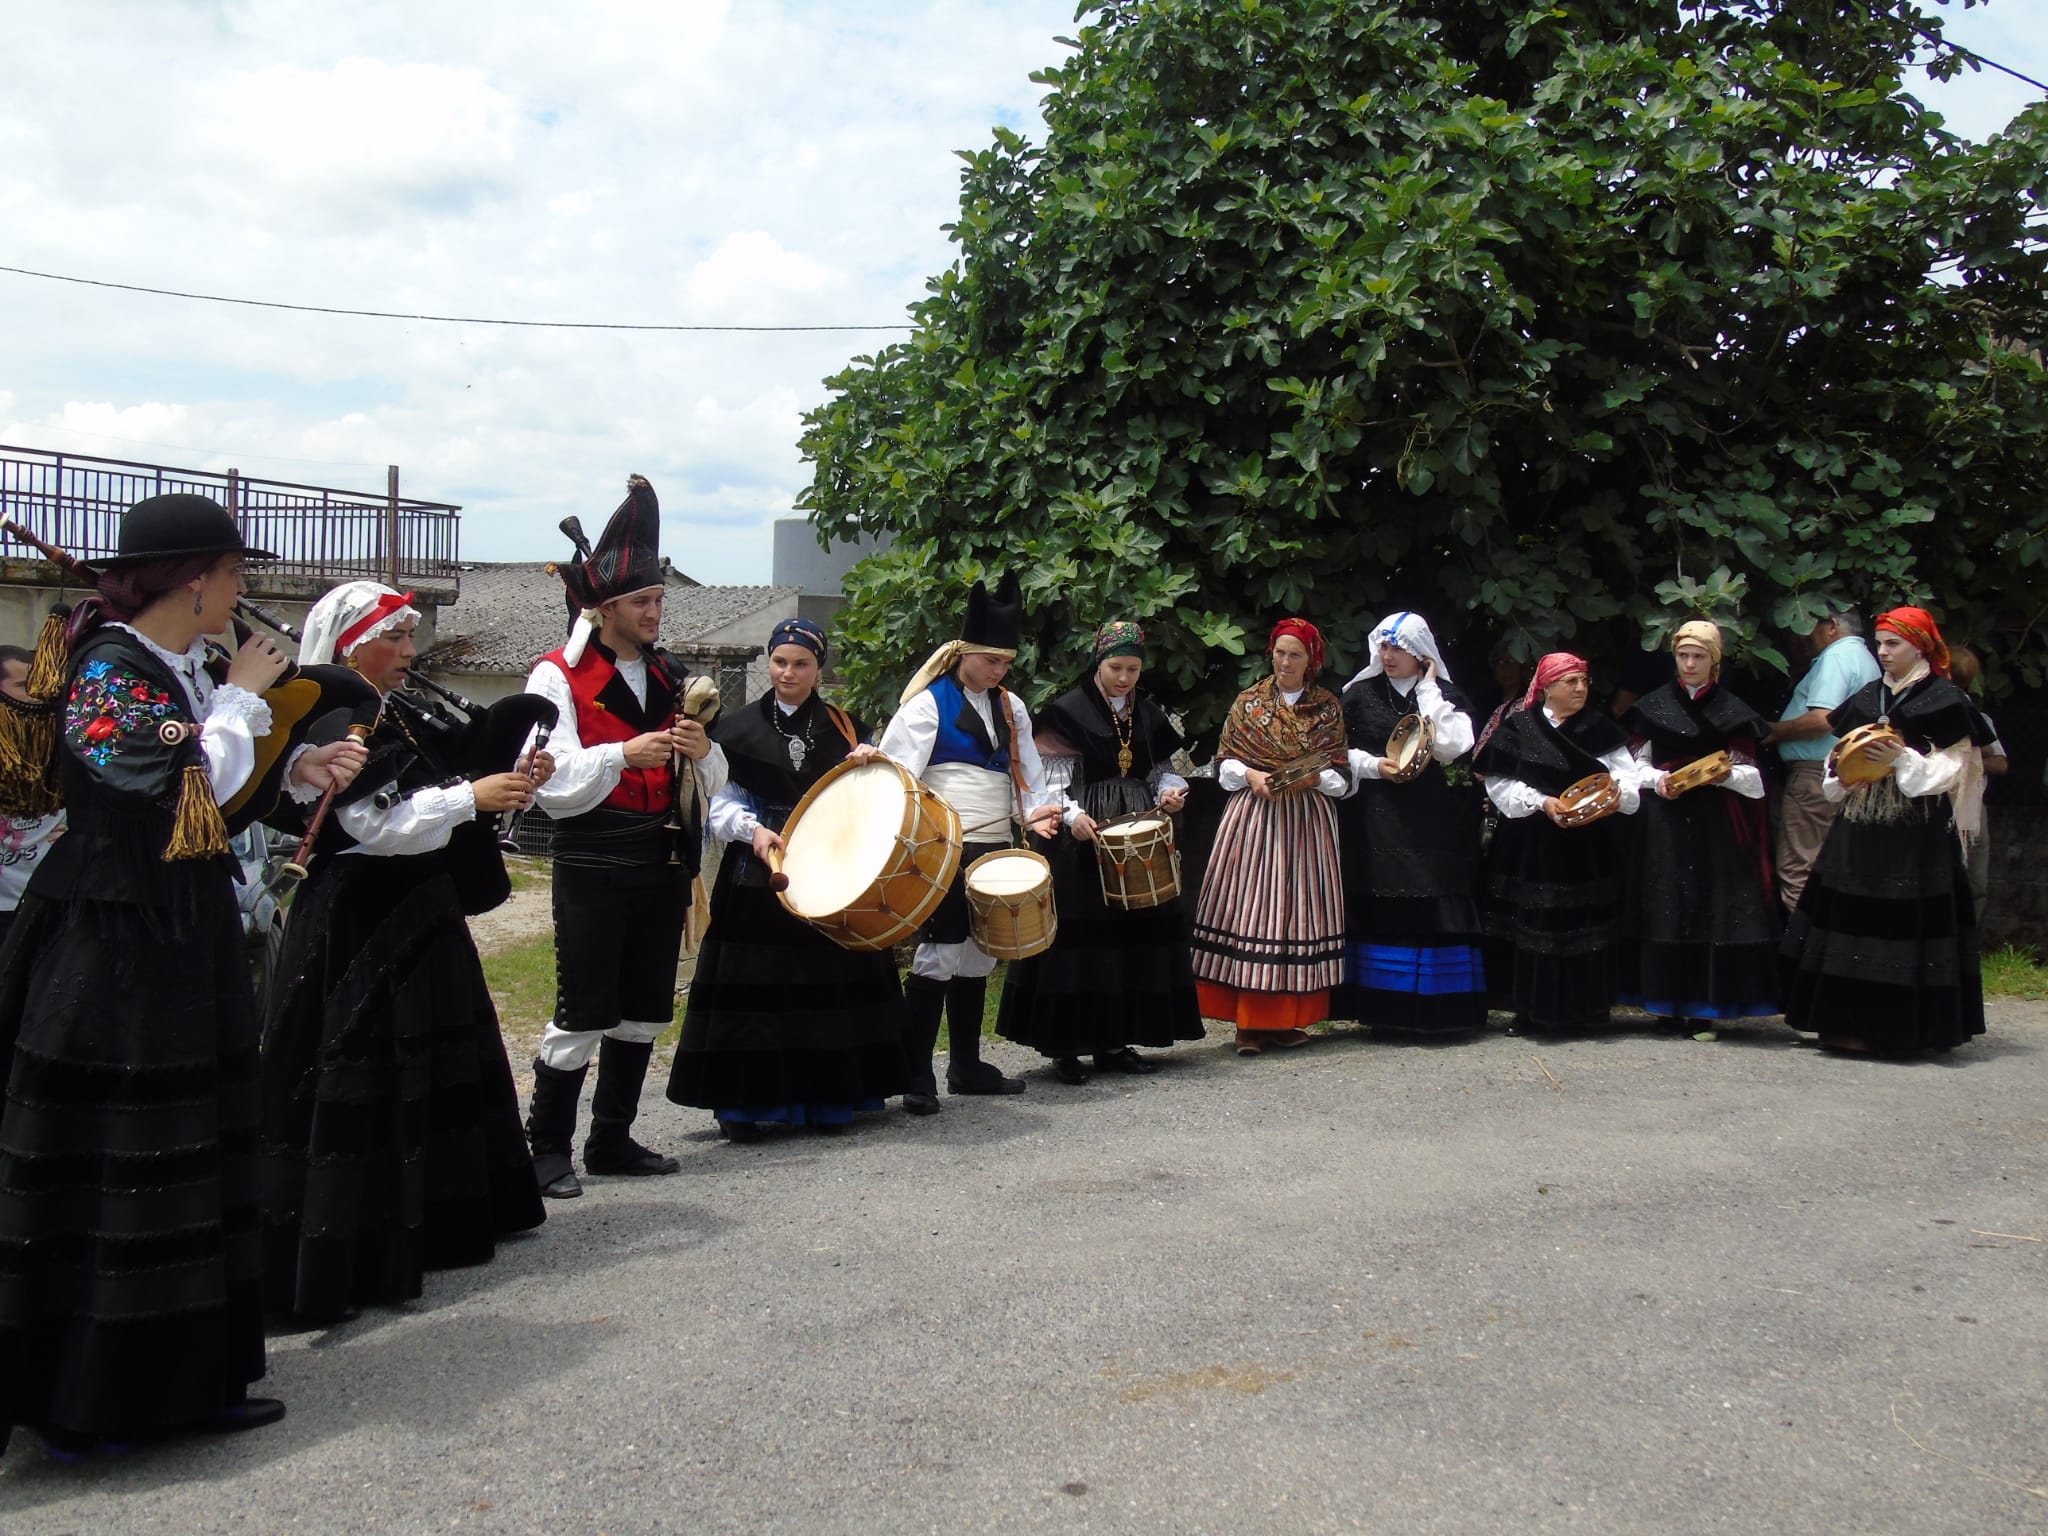 Actuación do grupo de música tradicional A Legua Dereita en Ponte de Neira o pasado mes de xuño